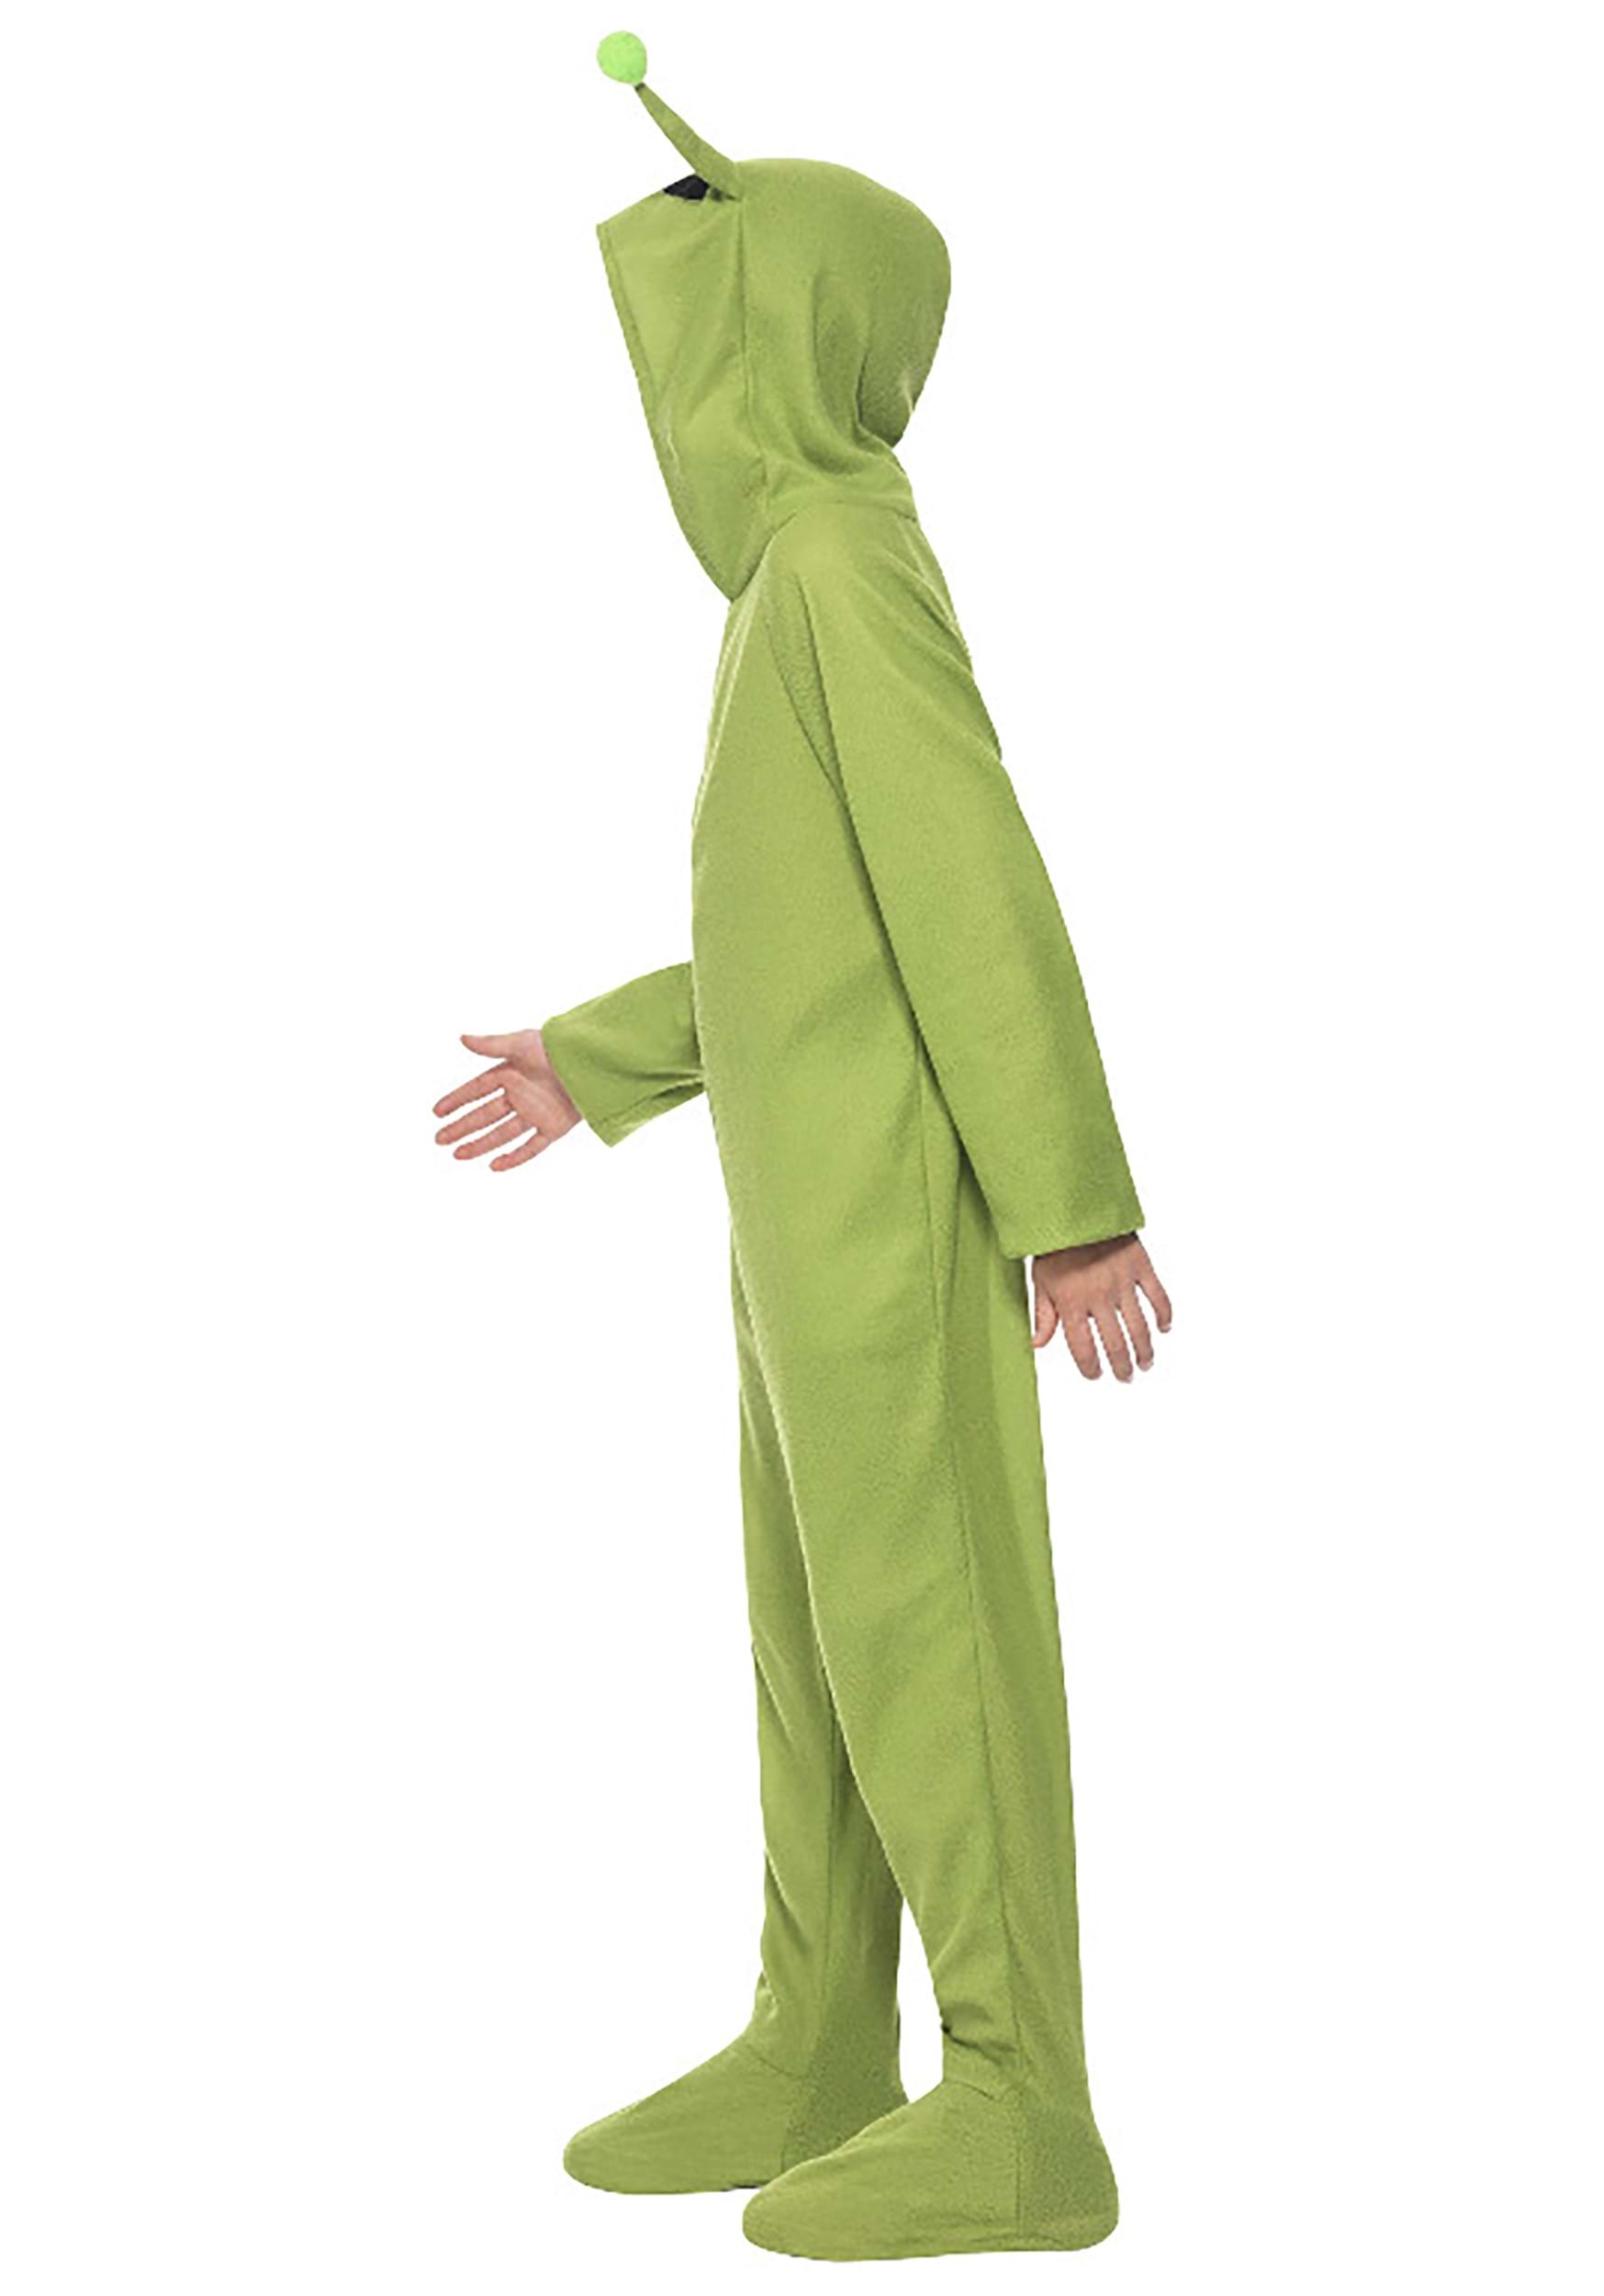 Green Alien Kid's Jumpsuit Fancy Dress Costume